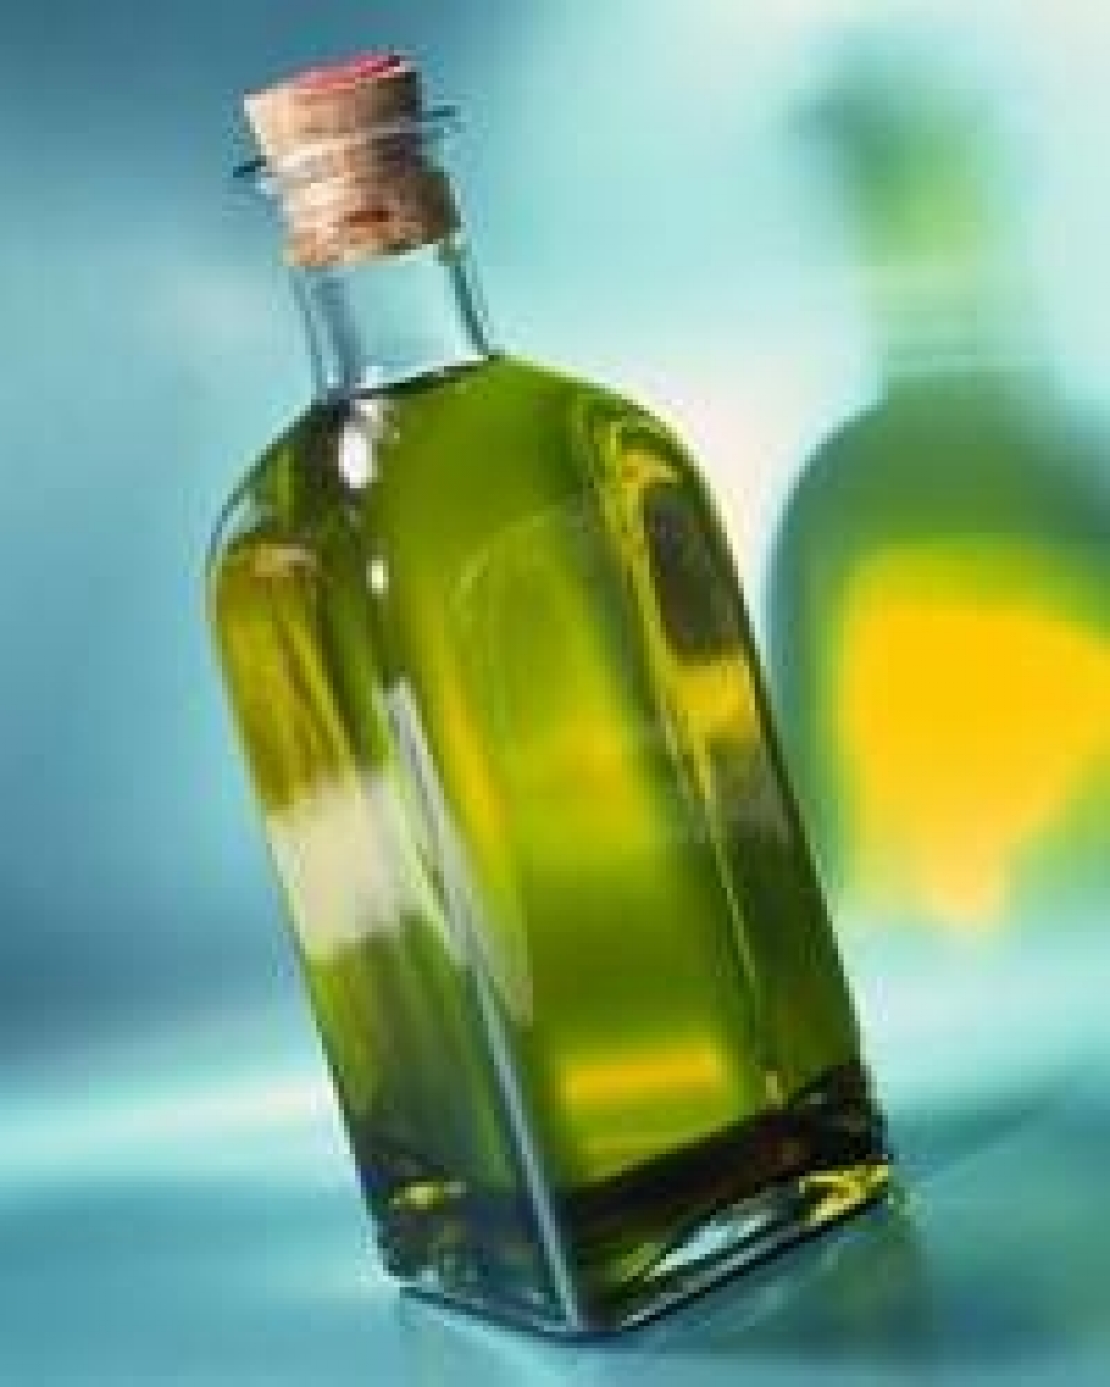 L'olio d'oliva spagnolo si prende il 41% del mercato americano